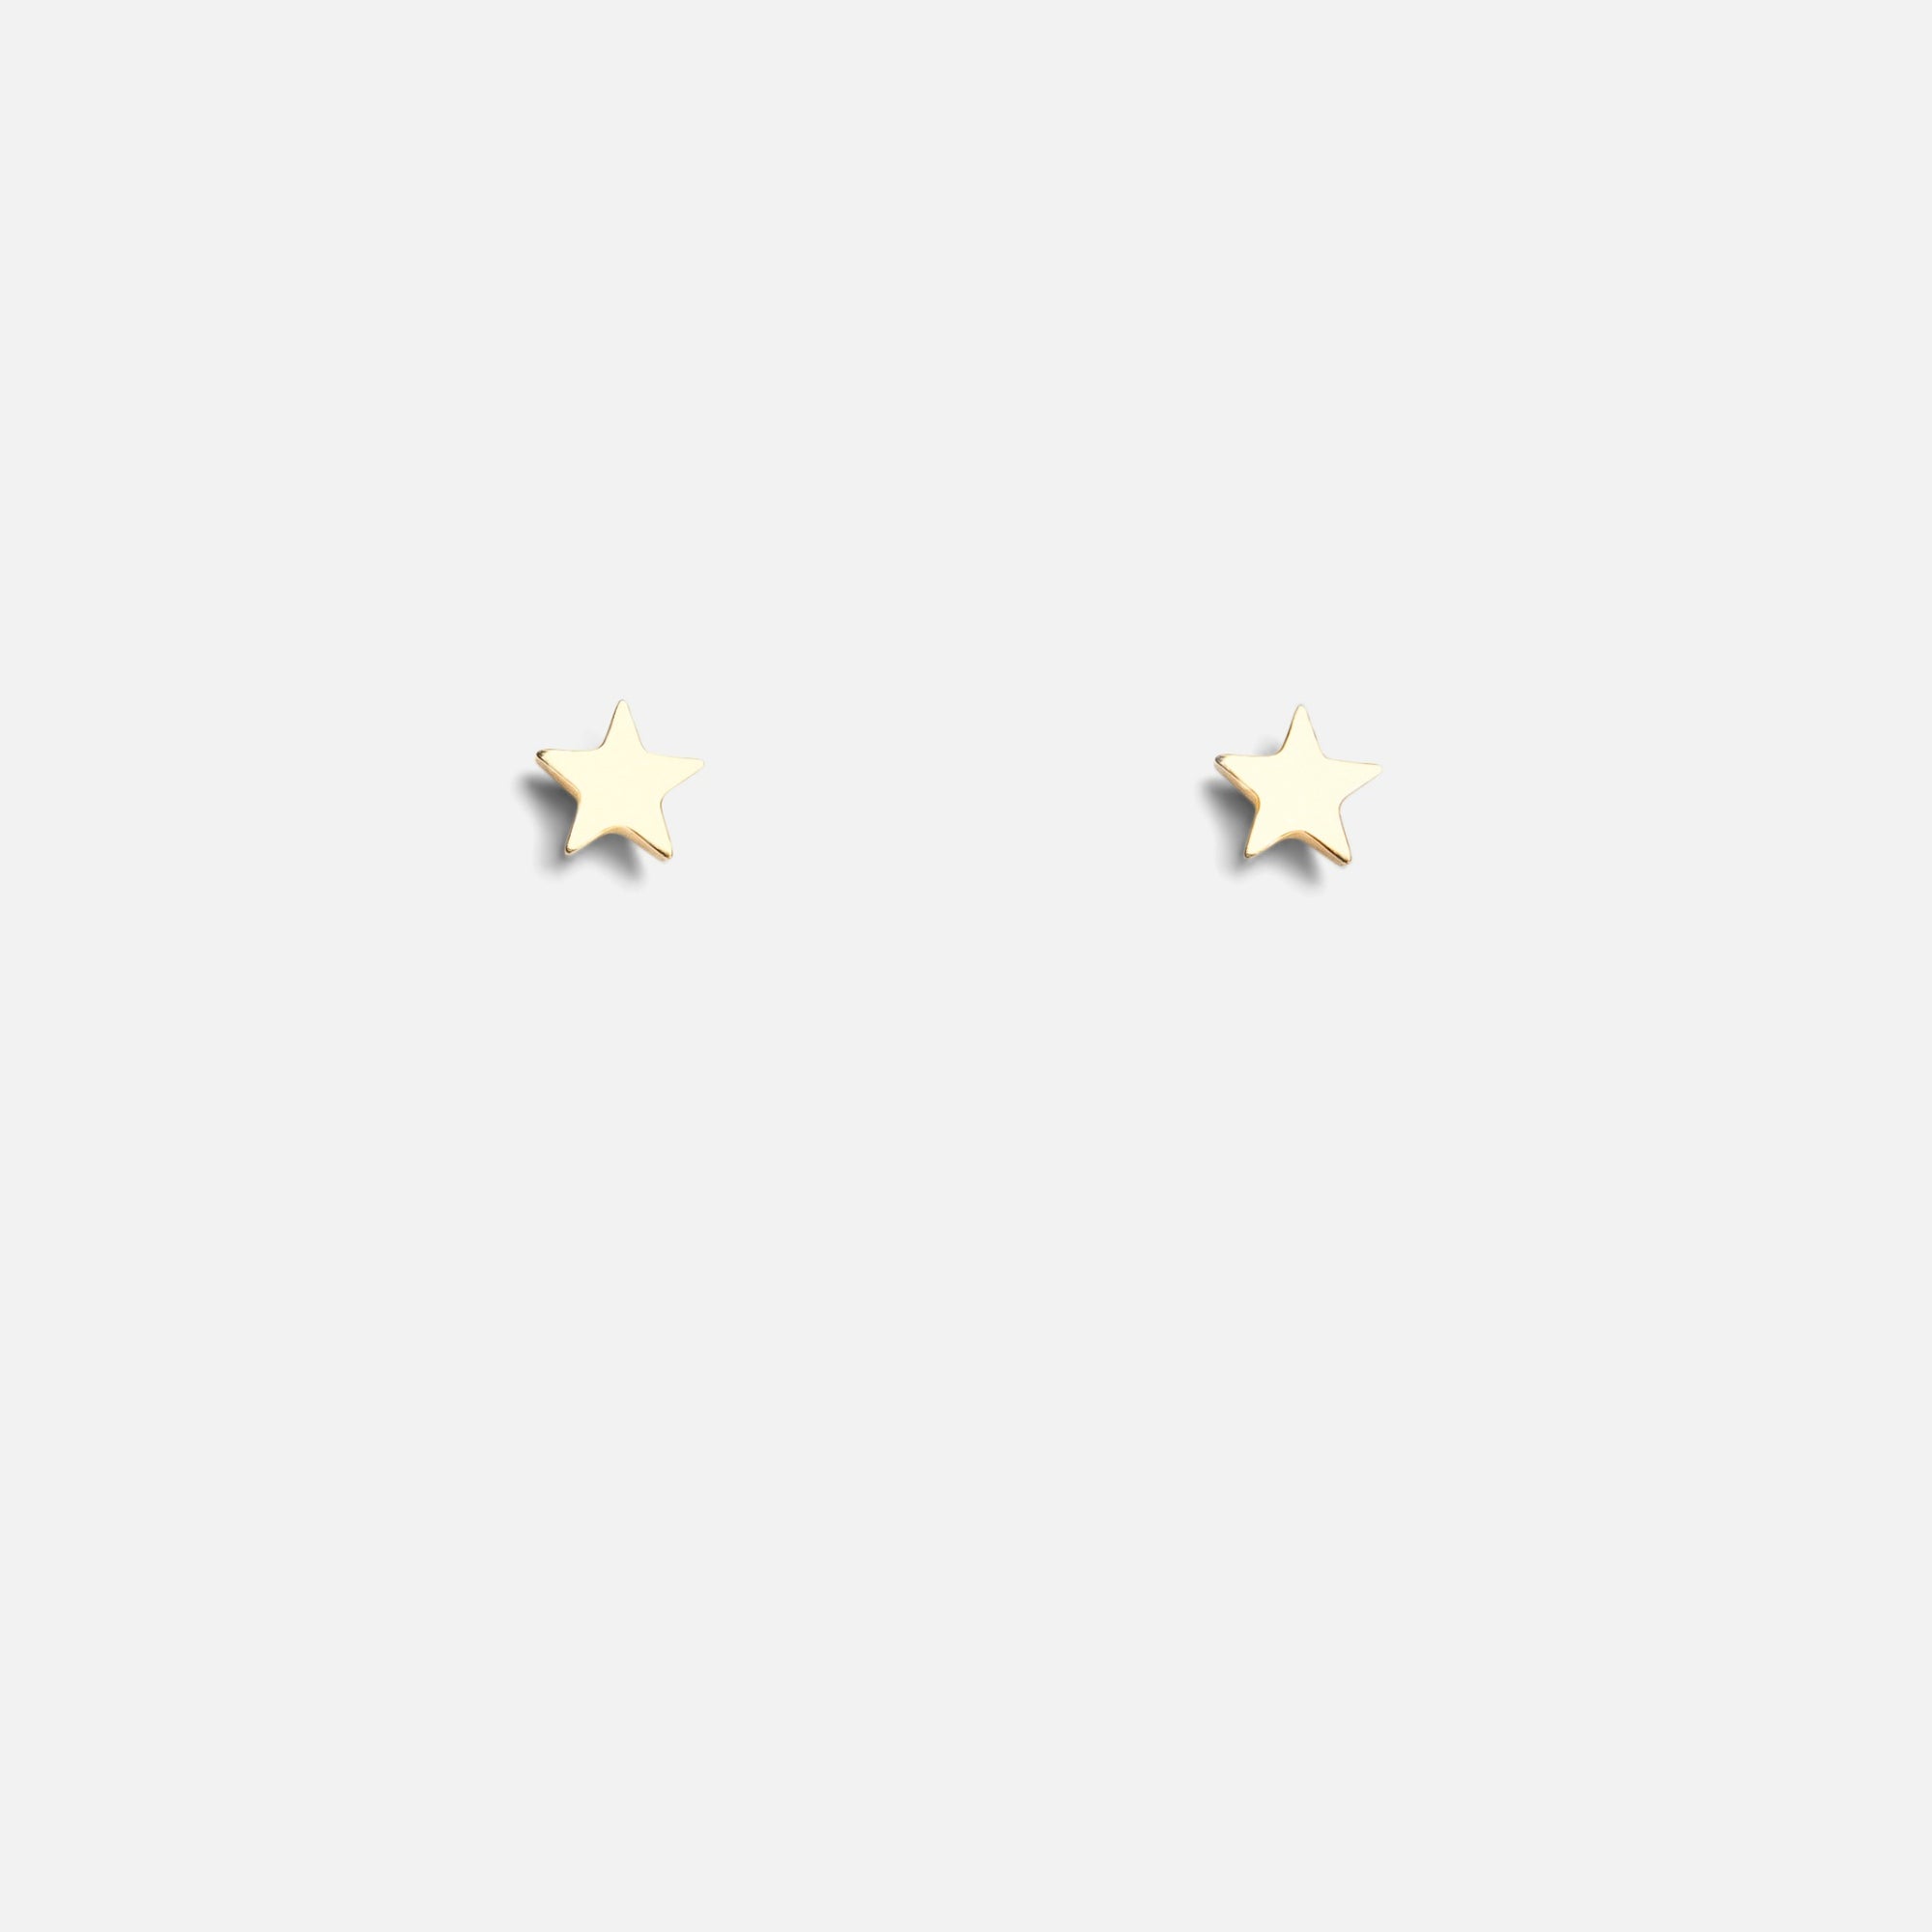 Mini golden star earrings in stainless steel